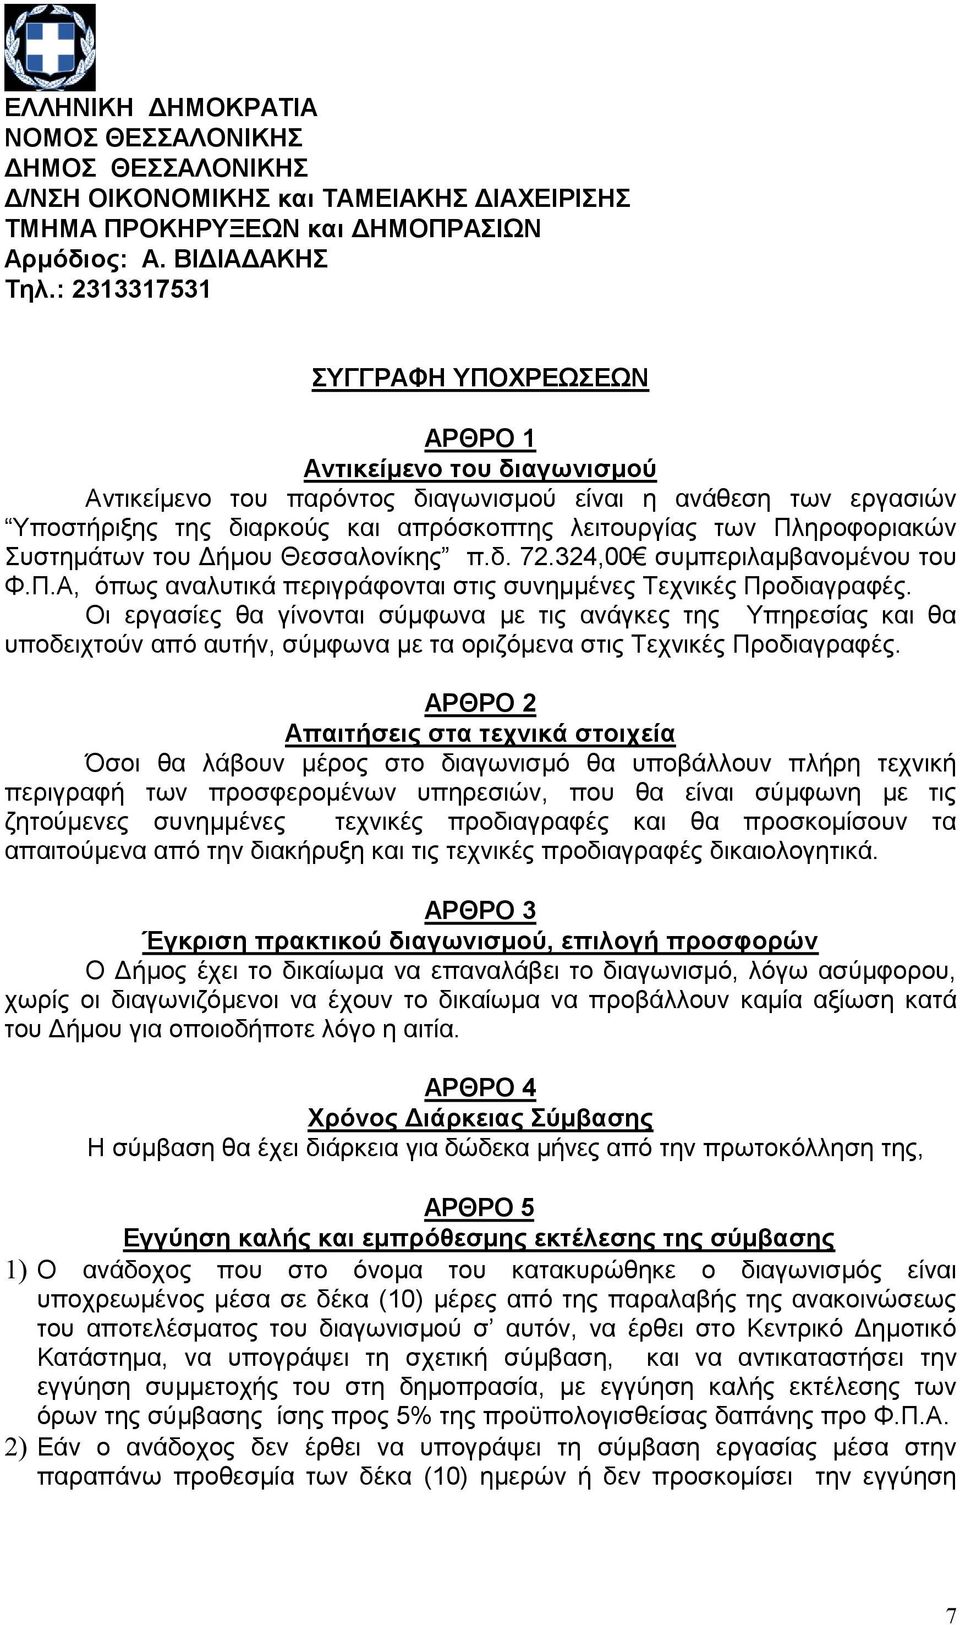 Πληροφοριακών Συστημάτων του Δήμου Θεσσαλονίκης π.δ. 72.324,00 συμπεριλαμβανομένου του Φ.Π.Α, όπως αναλυτικά περιγράφονται στις συνημμένες Τεχνικές Προδιαγραφές.